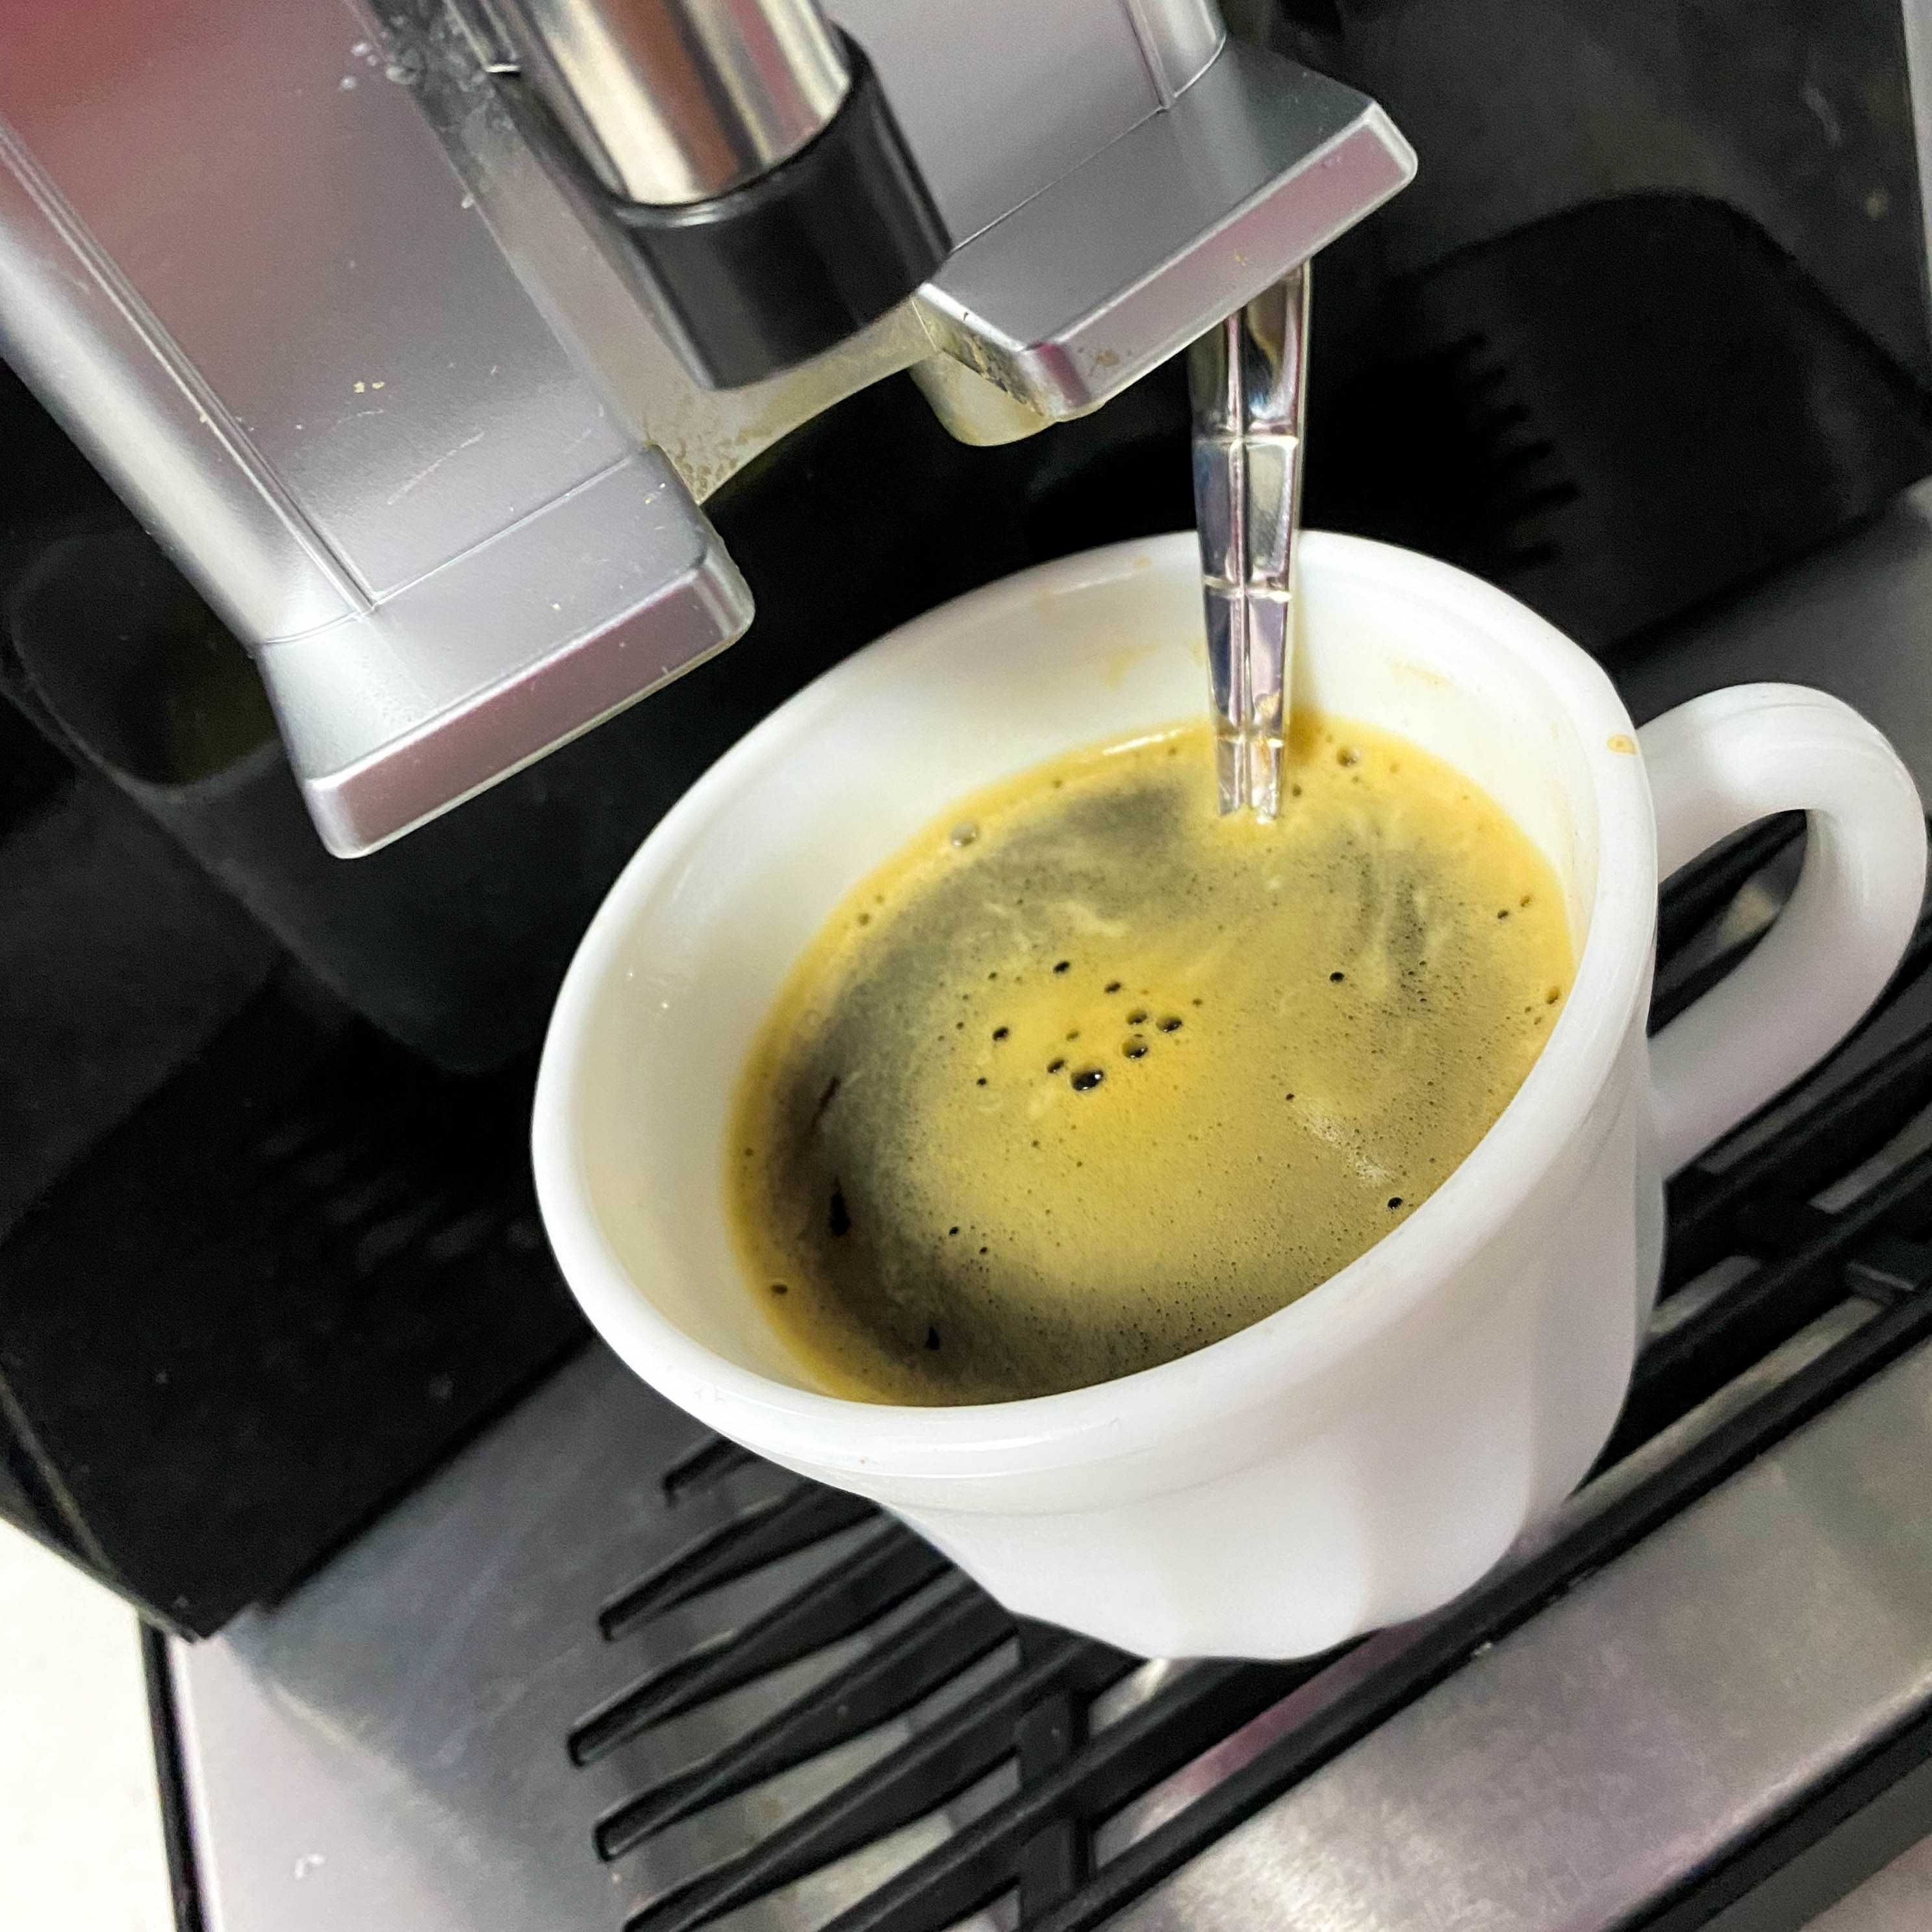 Speciality АРАБИКА Колумбия 100% кофе в зернах. Свежеобжаренный Кава